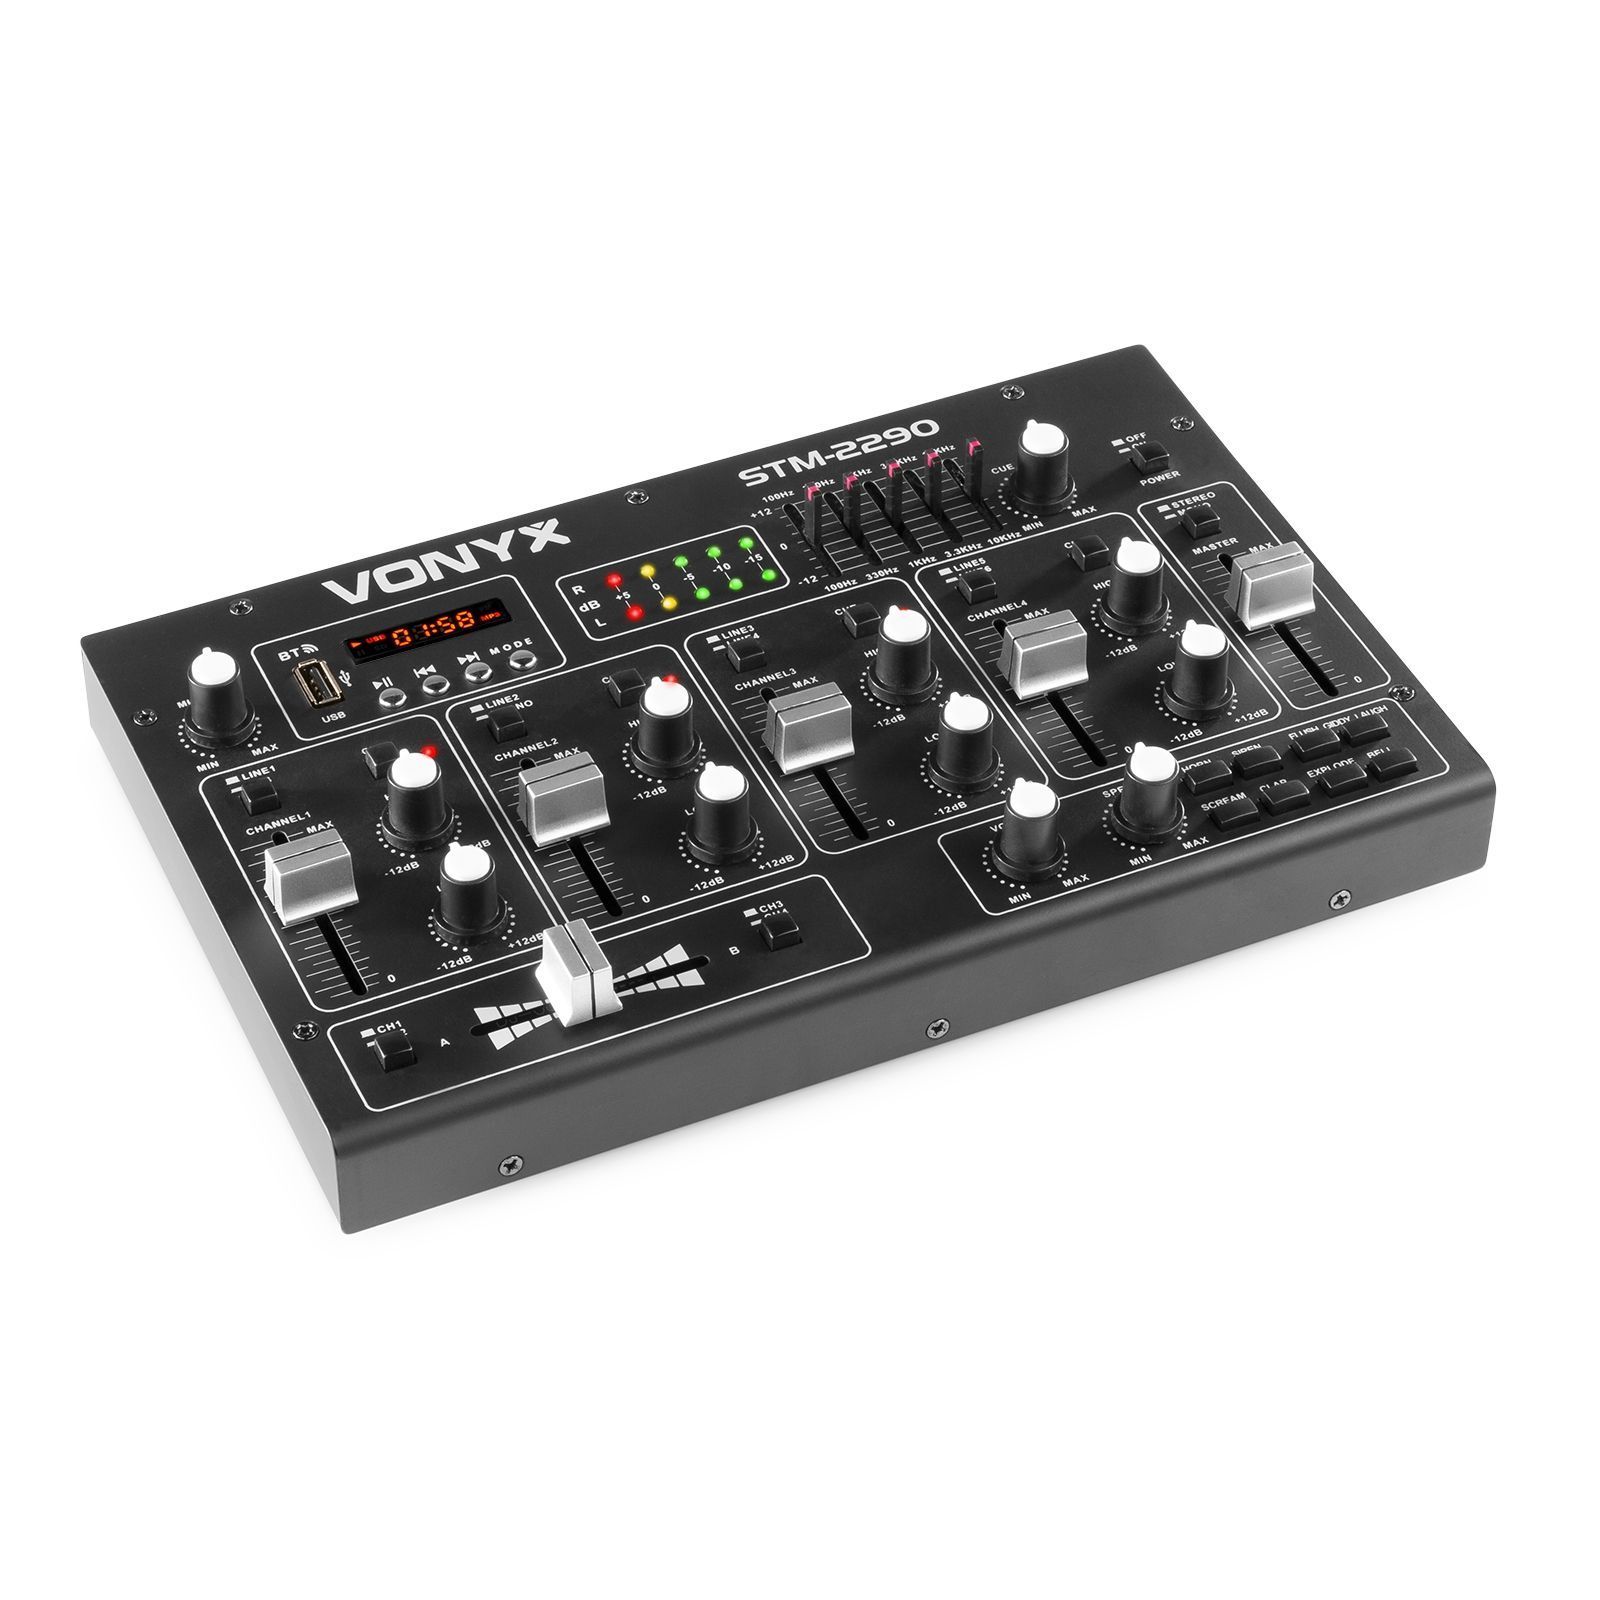 Vonyx STM2290 8 Kanaals DJ Mixer met Bluetooth, MP3 & geluidseffecten